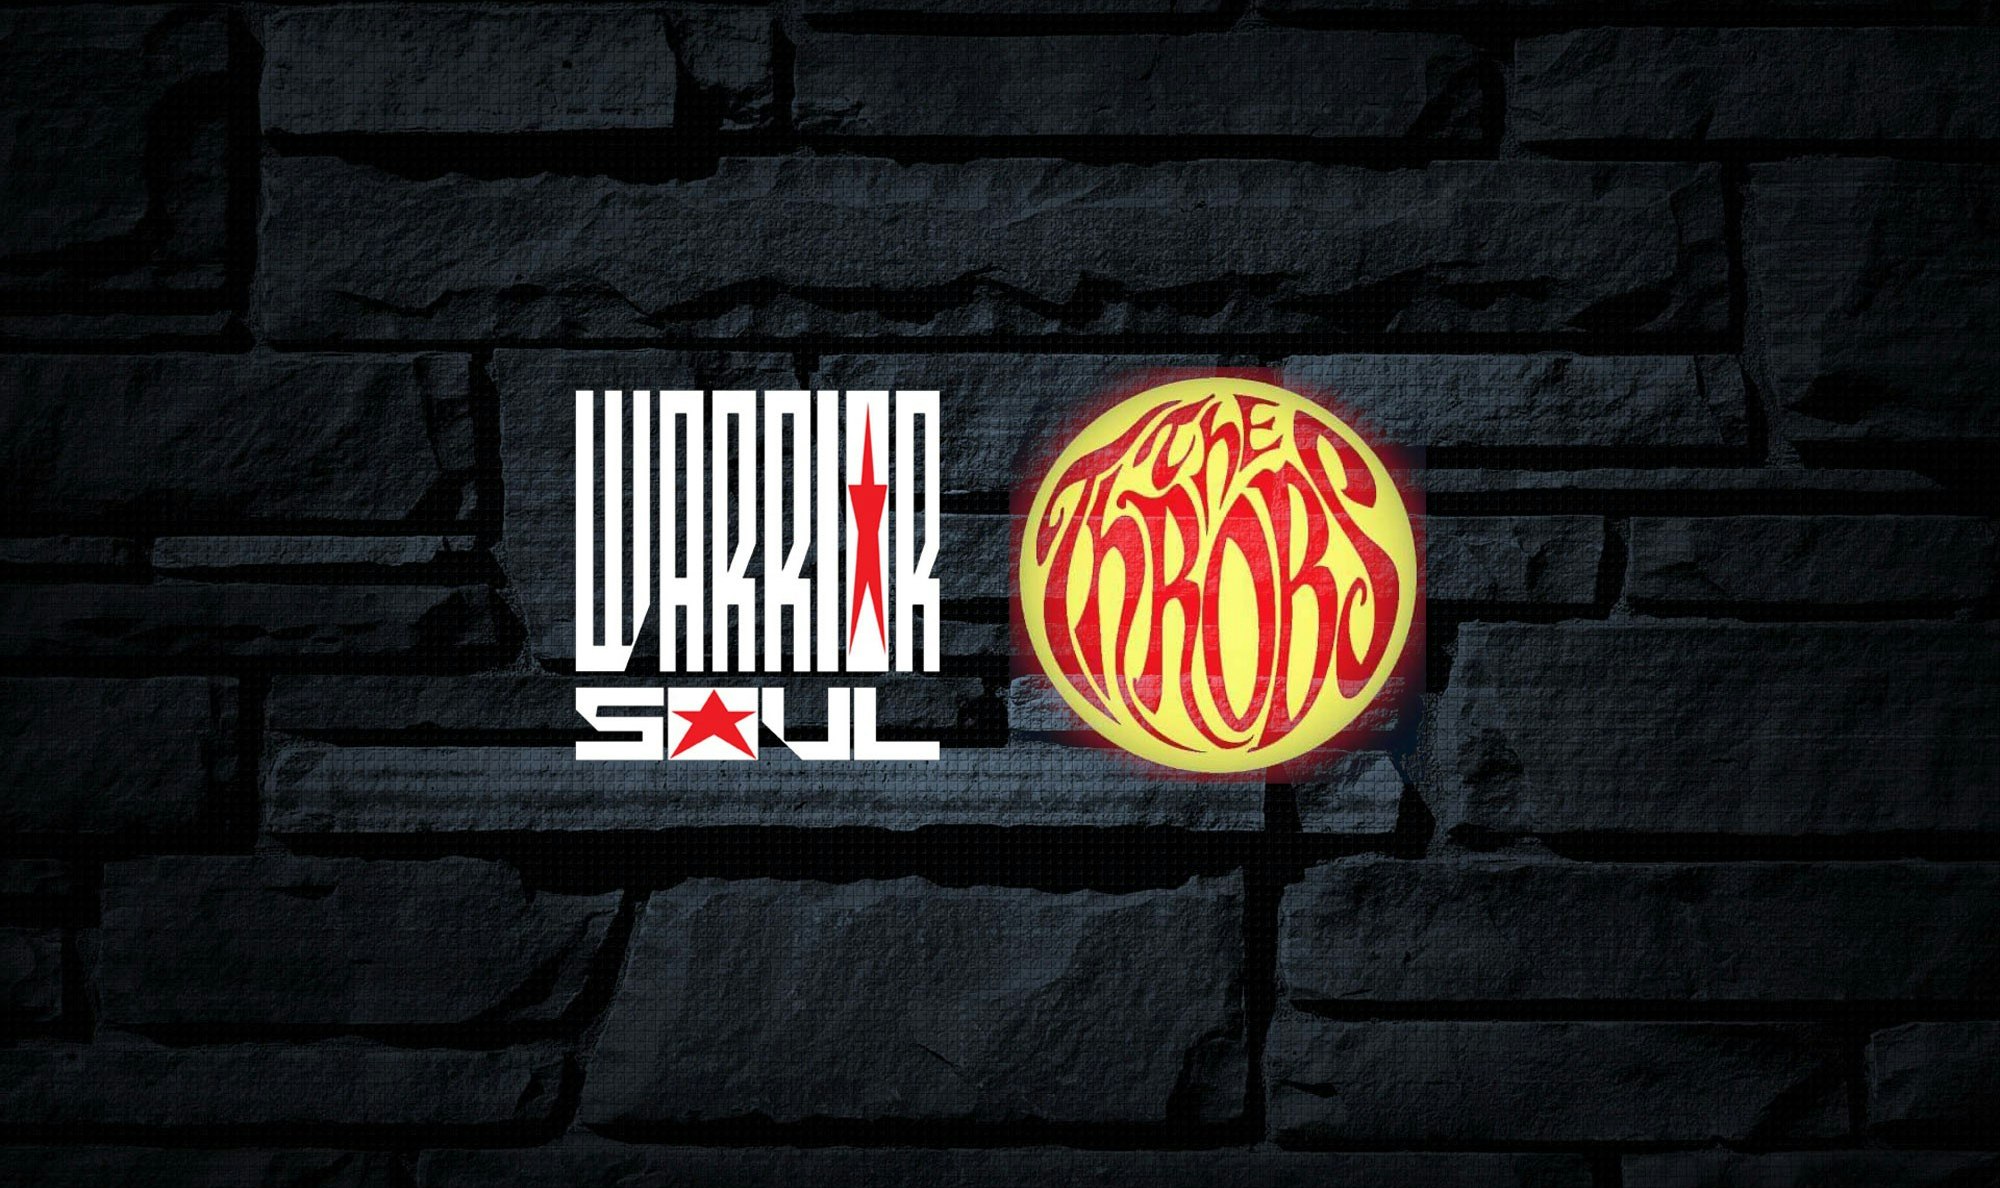 Warrior Soul + The Throbs